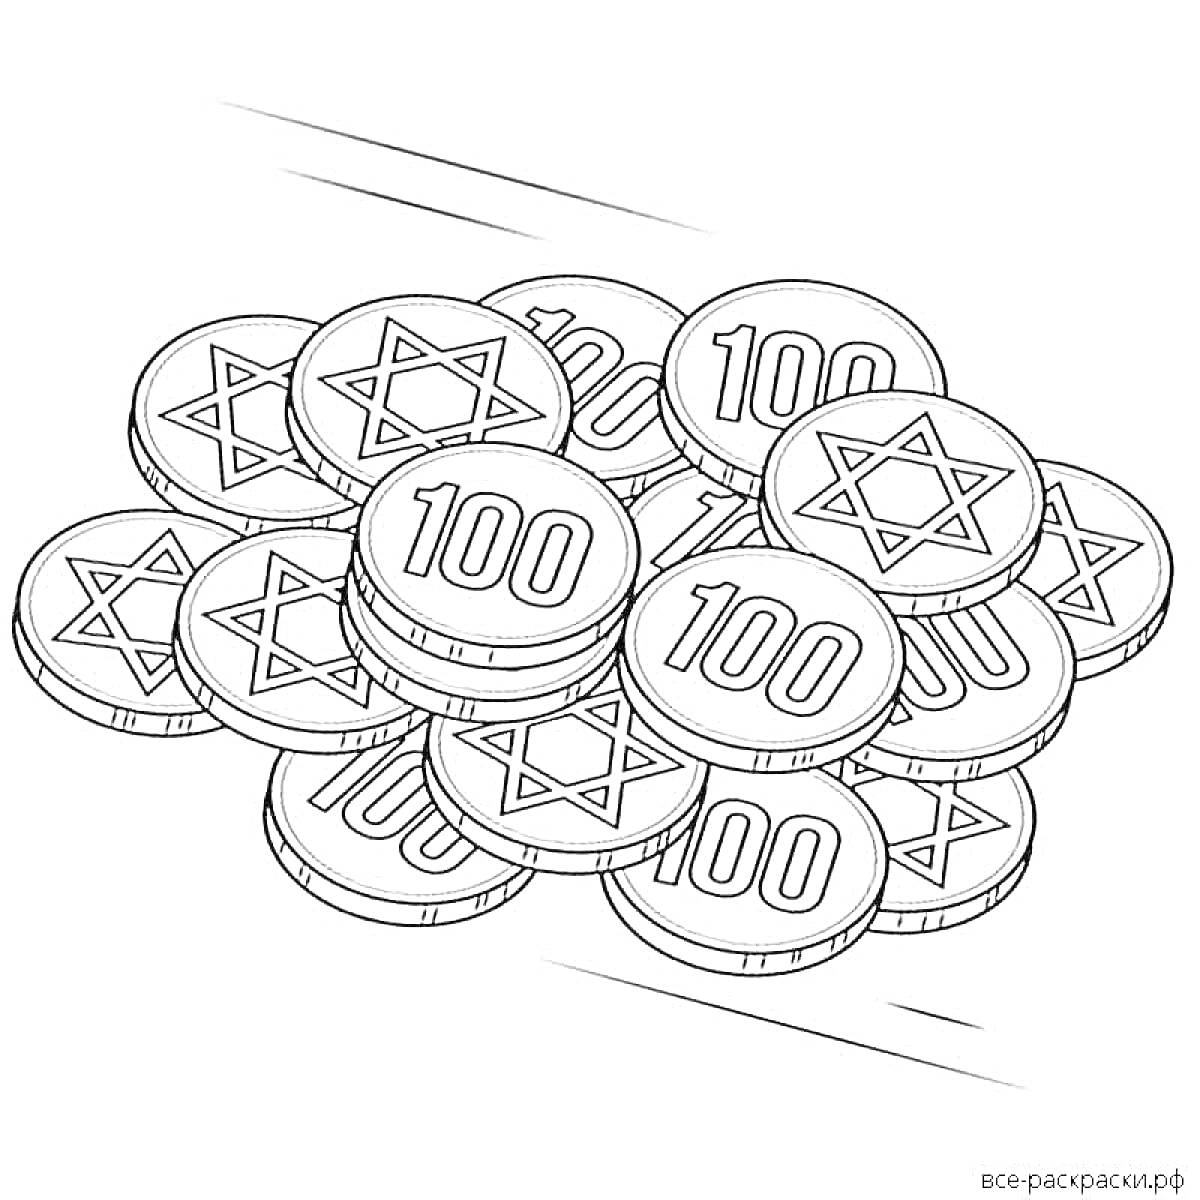 монеты с цифрами 100 и звездами